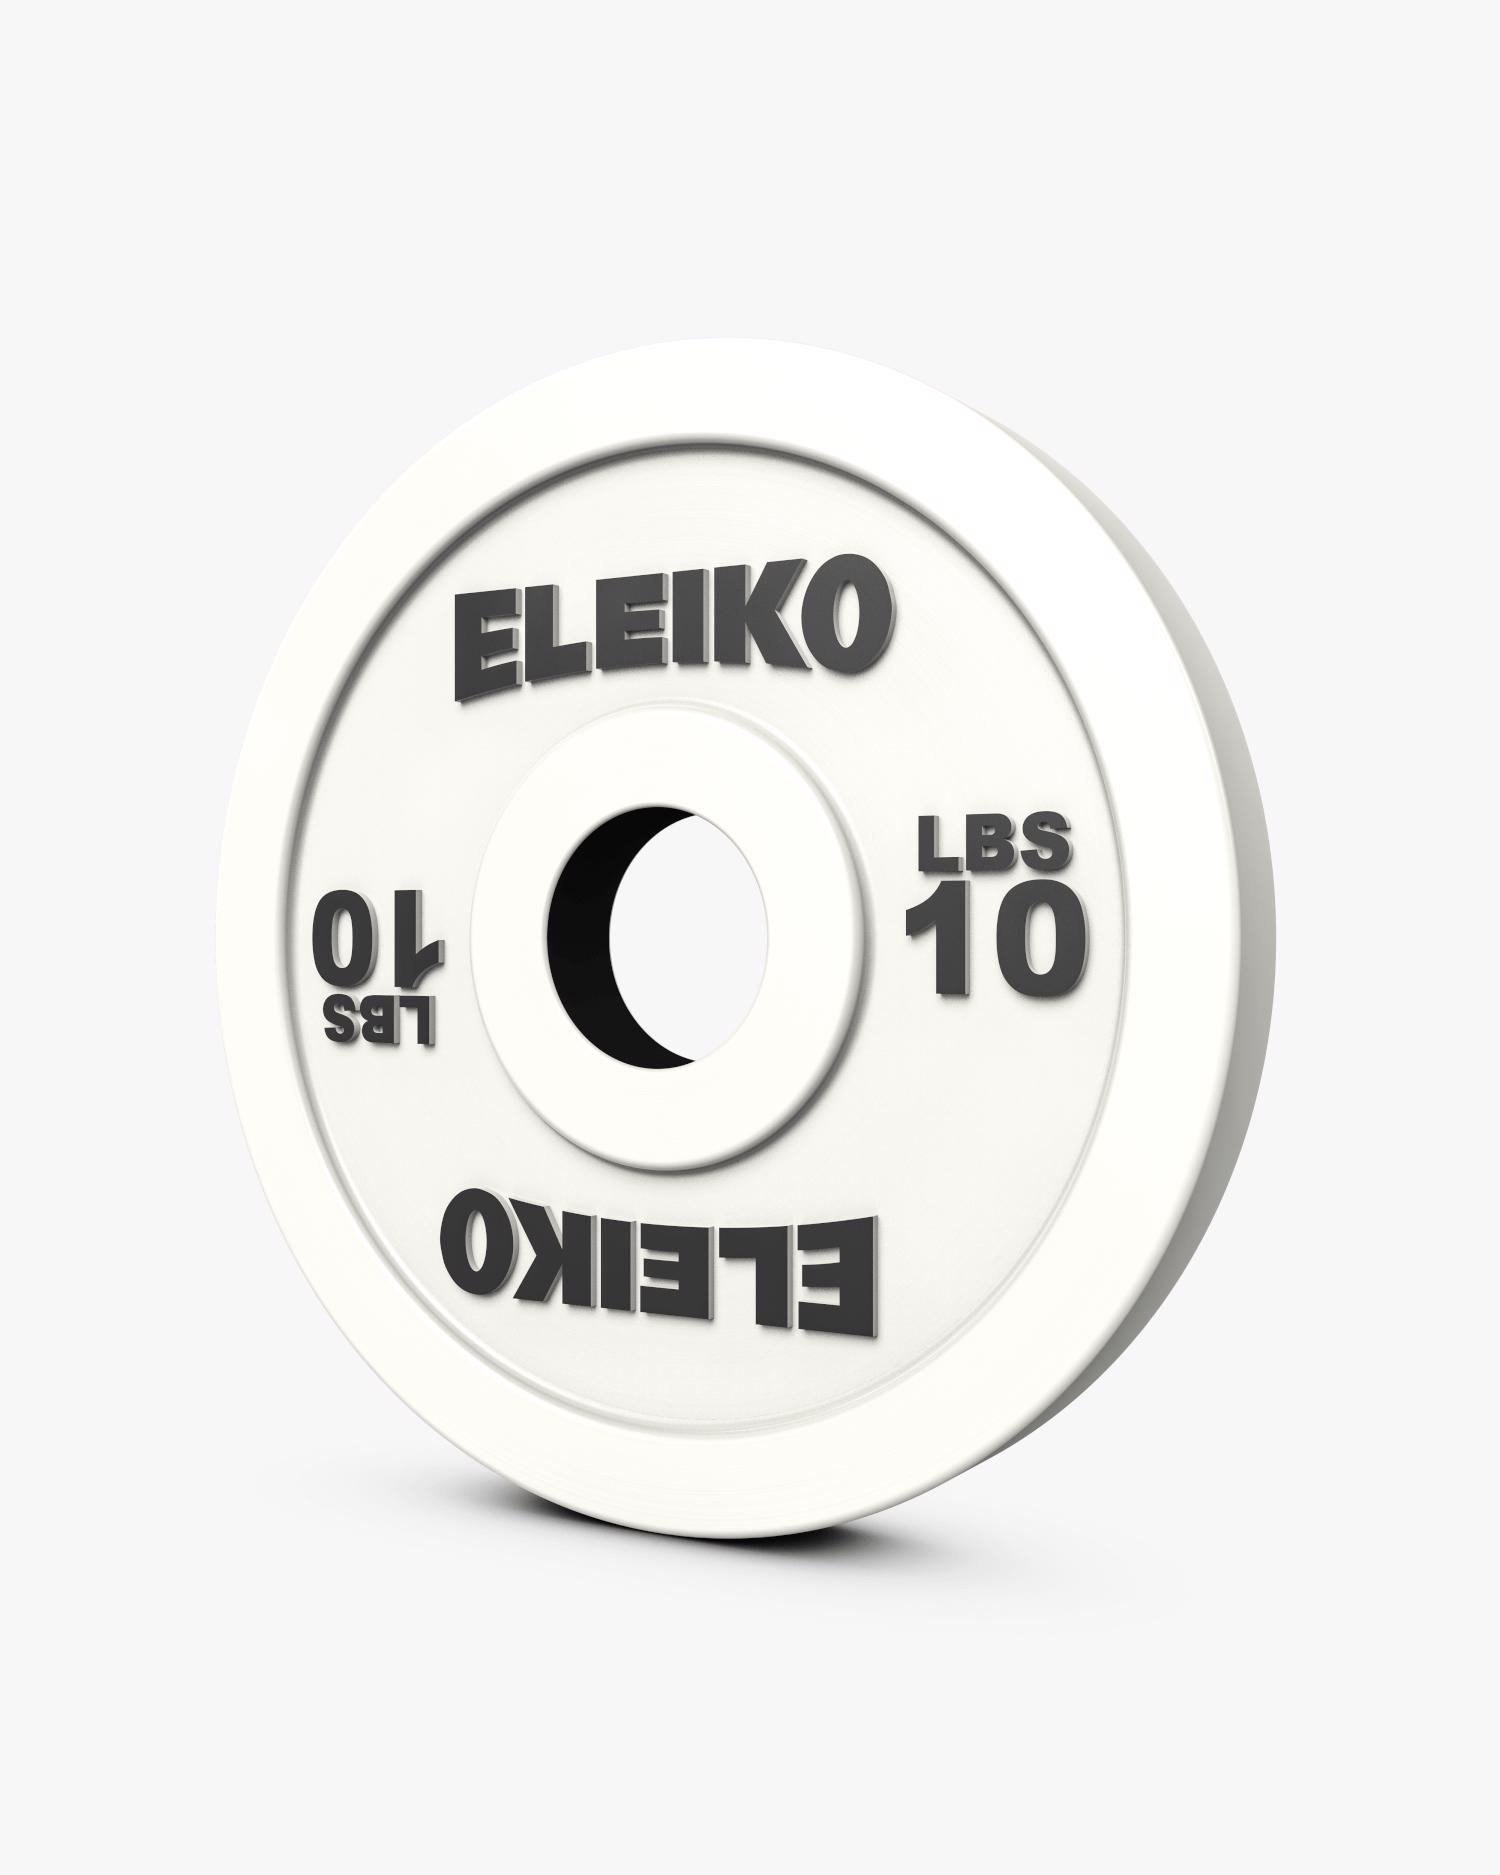 Eleiko Olympic WL Technique Disc 10 lbs 